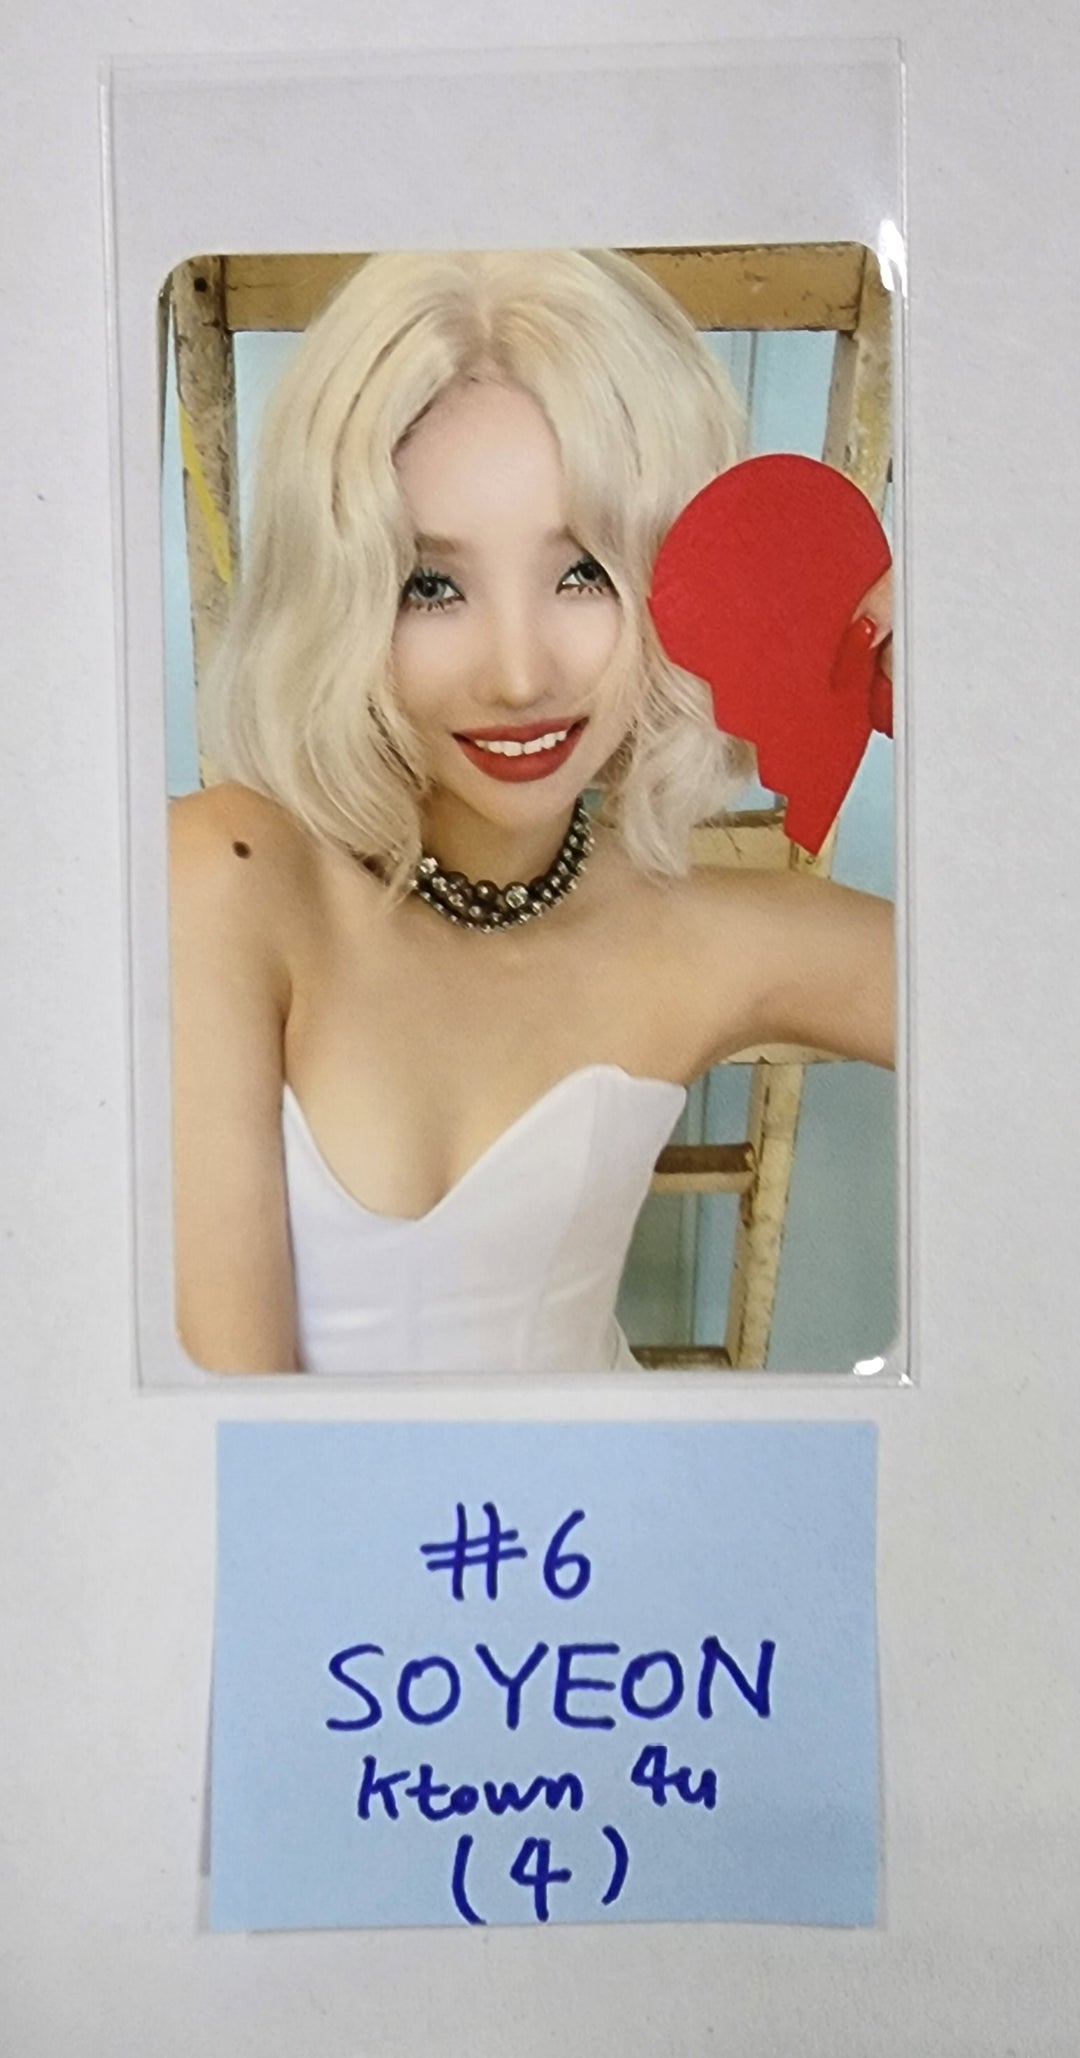 (g) I-DLE "I LOVE" - Ktown4u Fansign Event Photocard